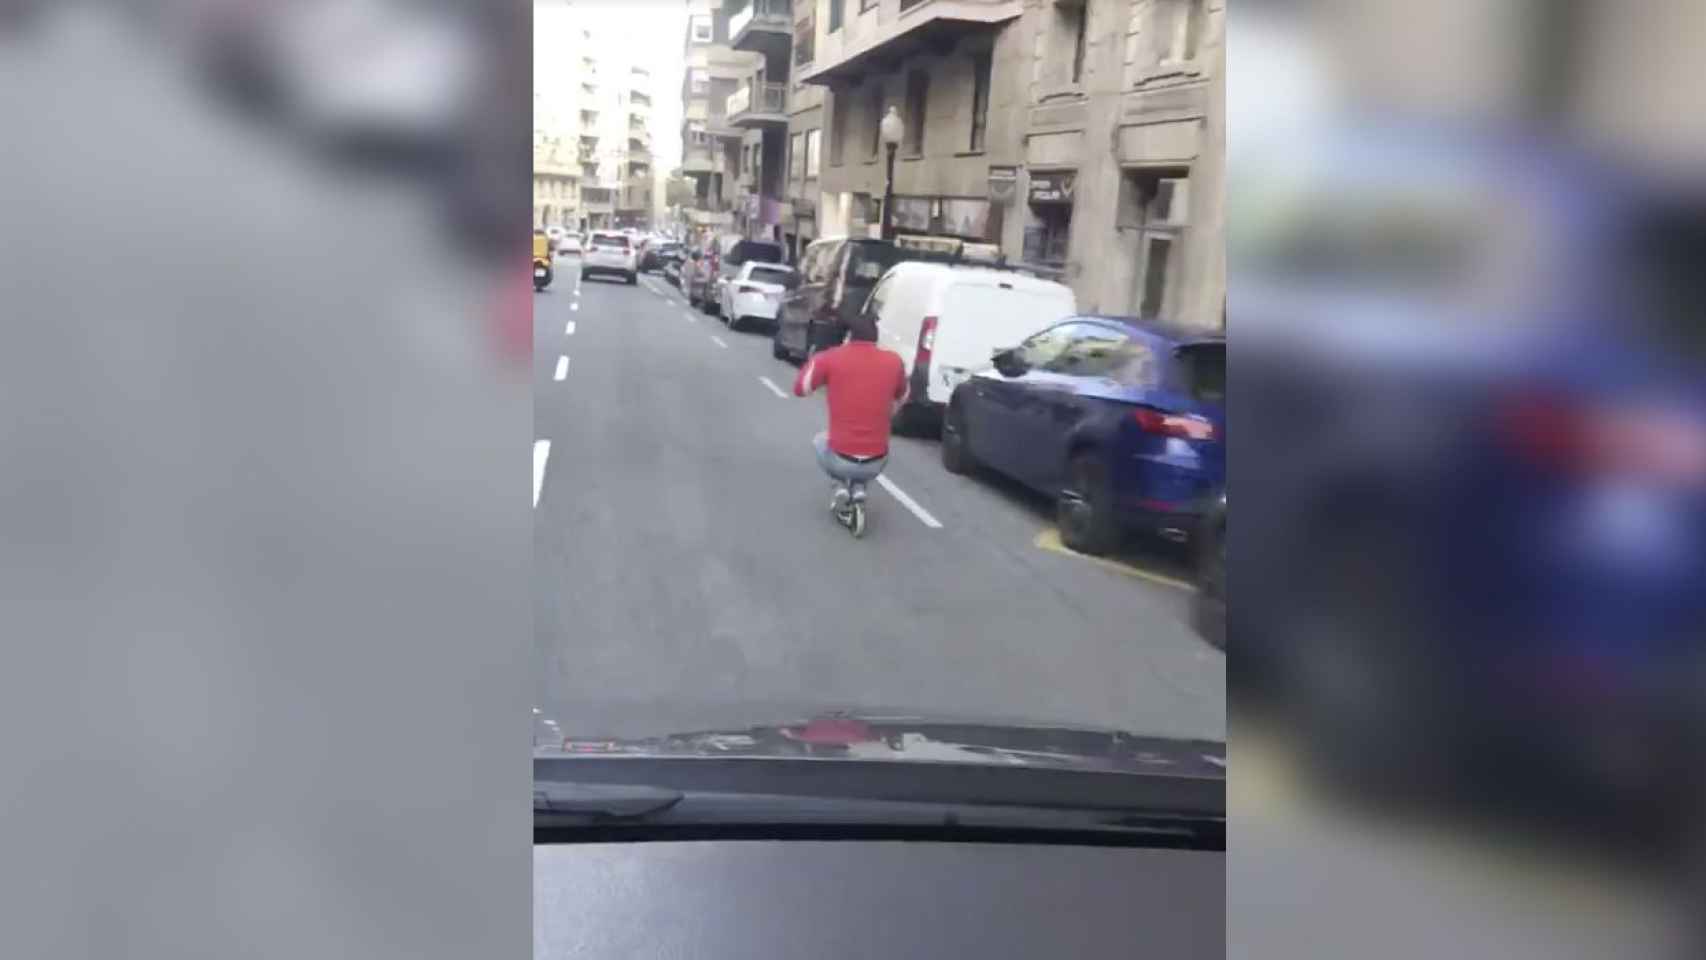 Captura de pantalla del vídeo del individuo bajando en patinete a gran velocidad por la calle Balmes de Barcelona / TWITTER - Miguel Ángel Rosselló